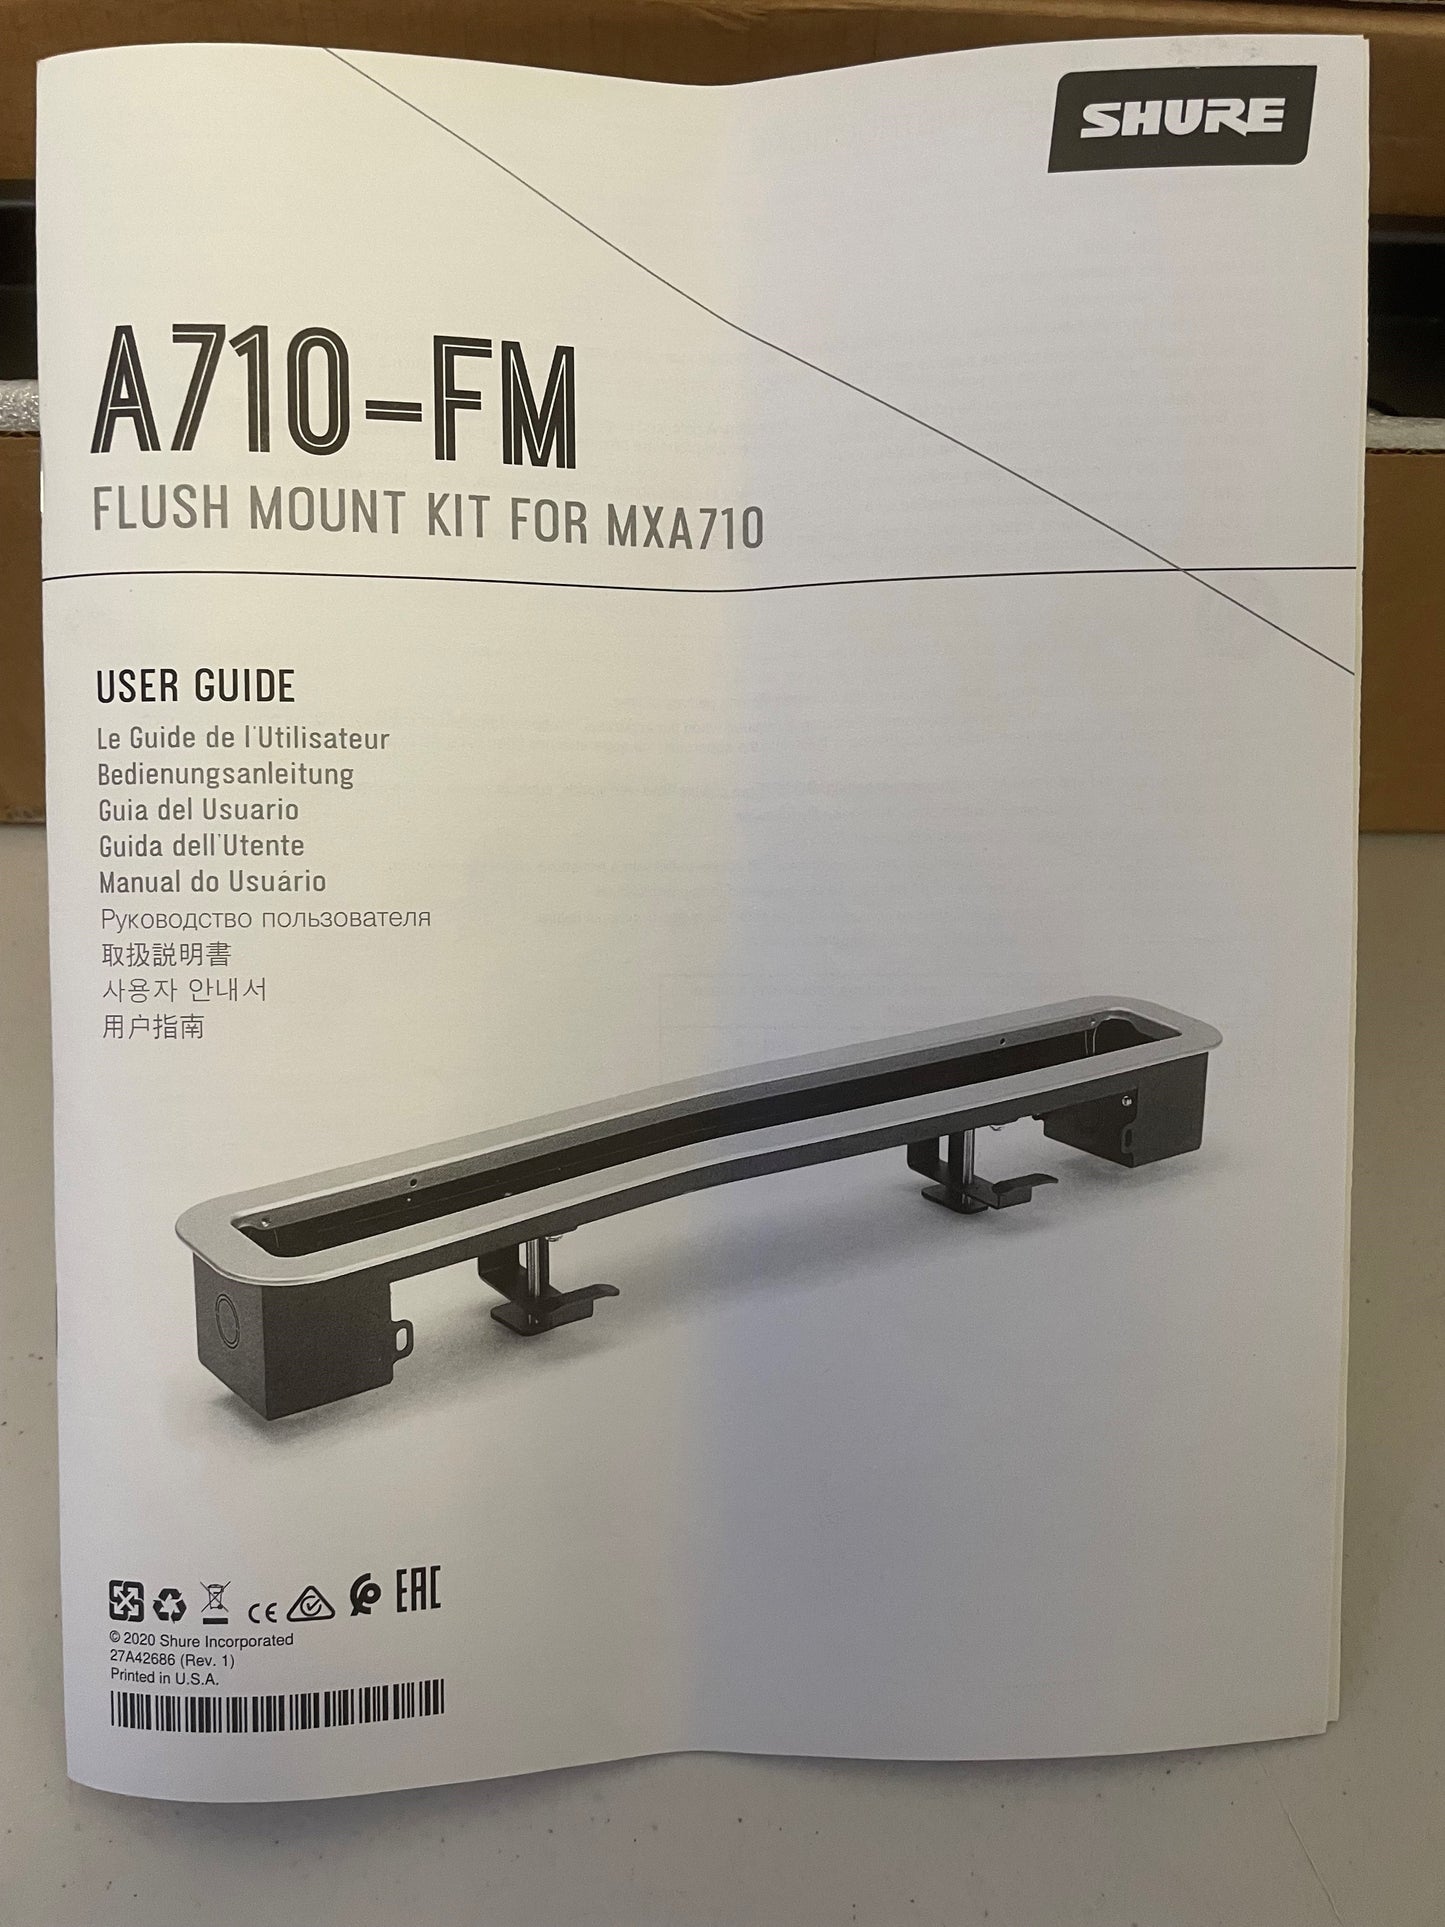 Shure A710-FM 2FT, Housing for Mxa710